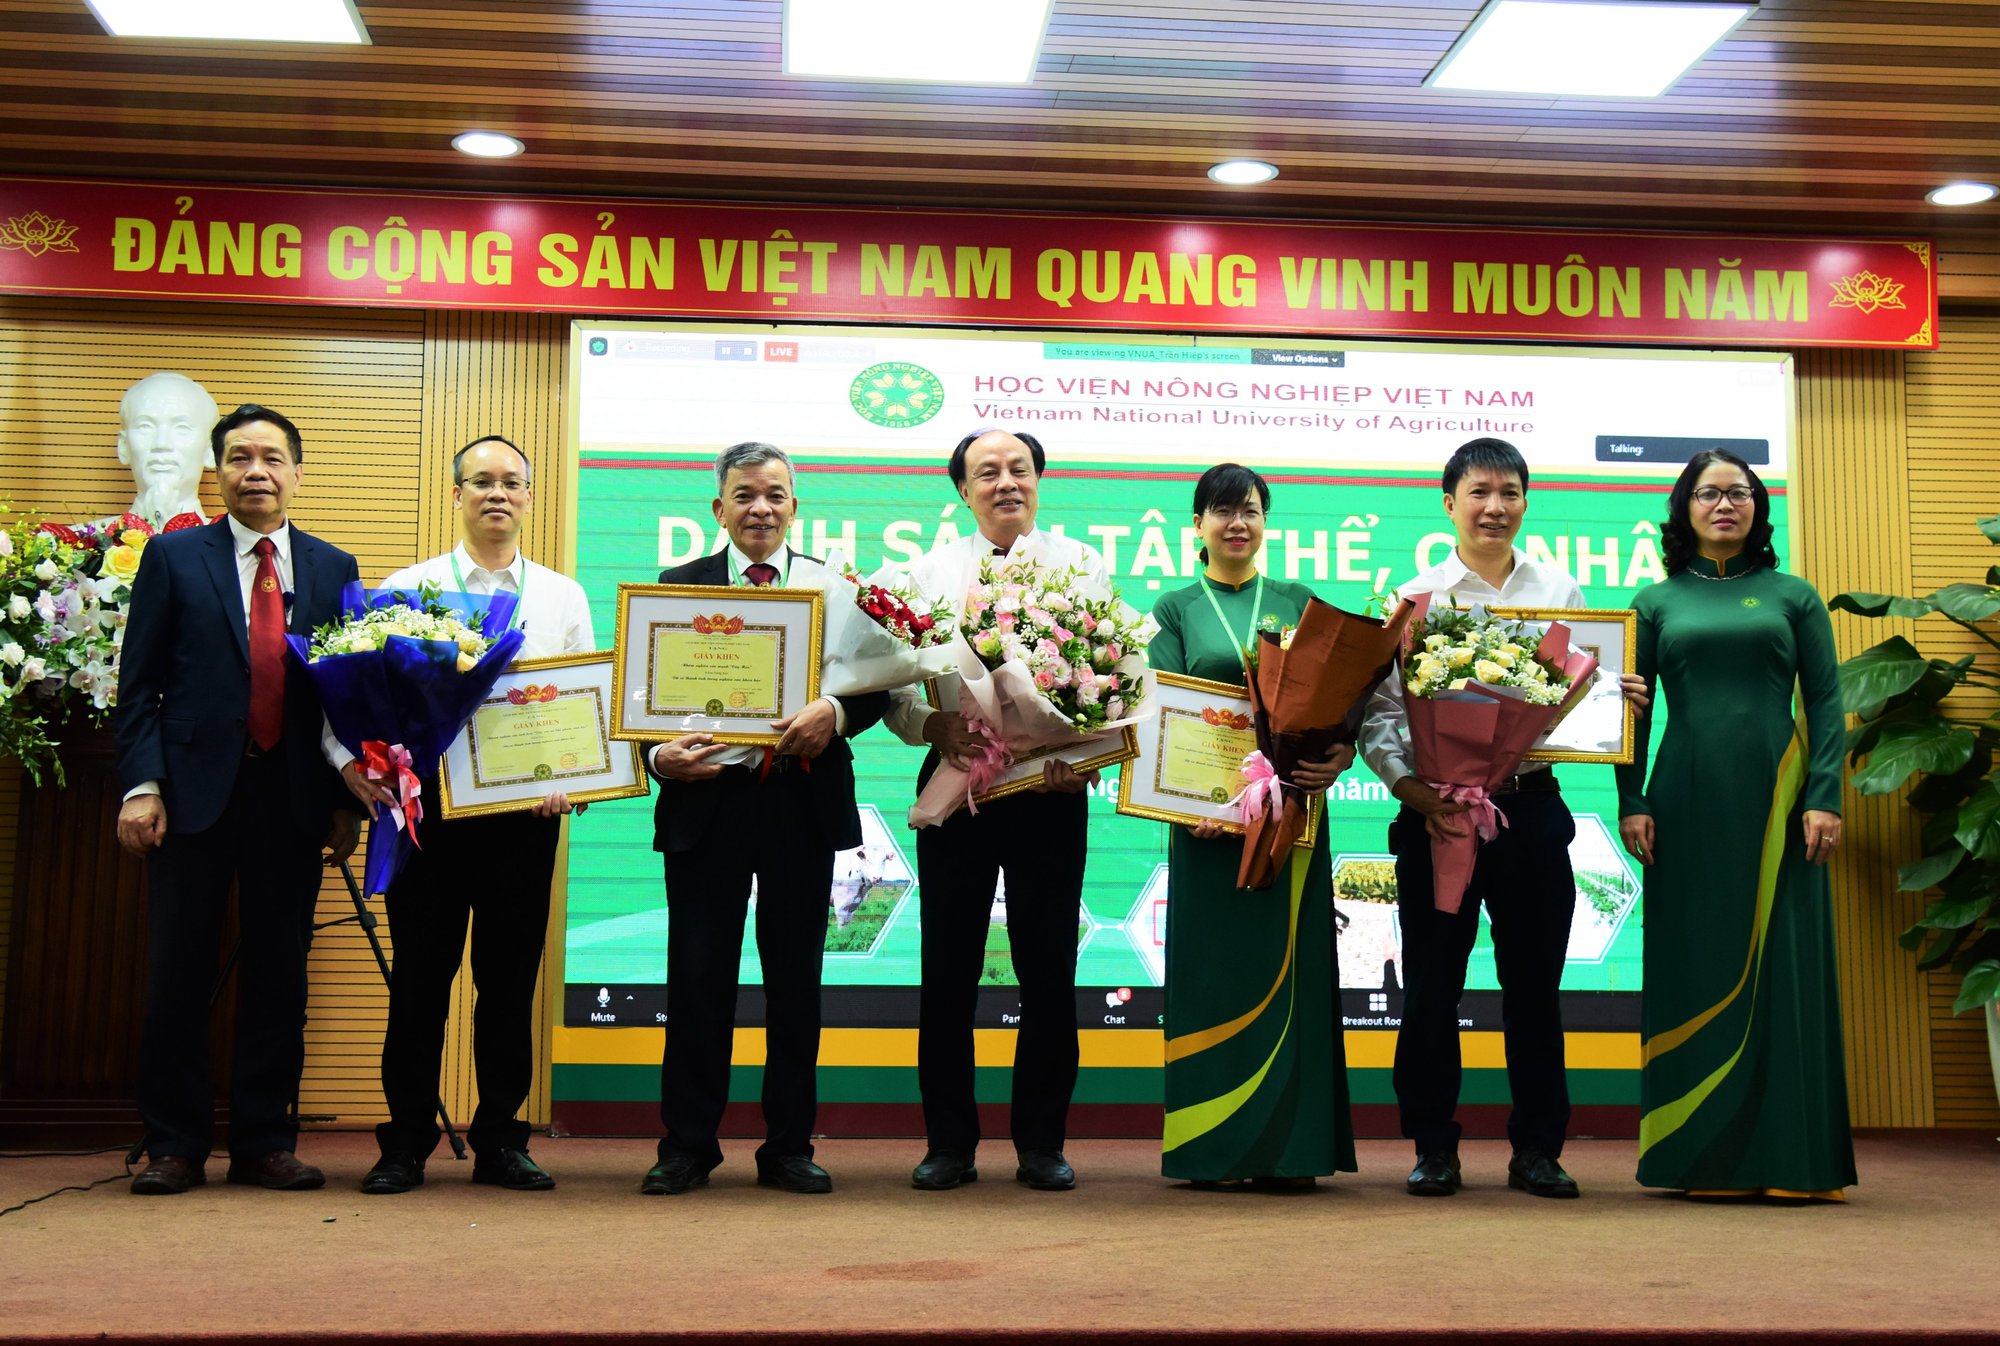 Giám đốc Học viện Nông nghiệp Việt Nam: Khoa học công nghệ là sức sống của trường đại học   - Ảnh 2.